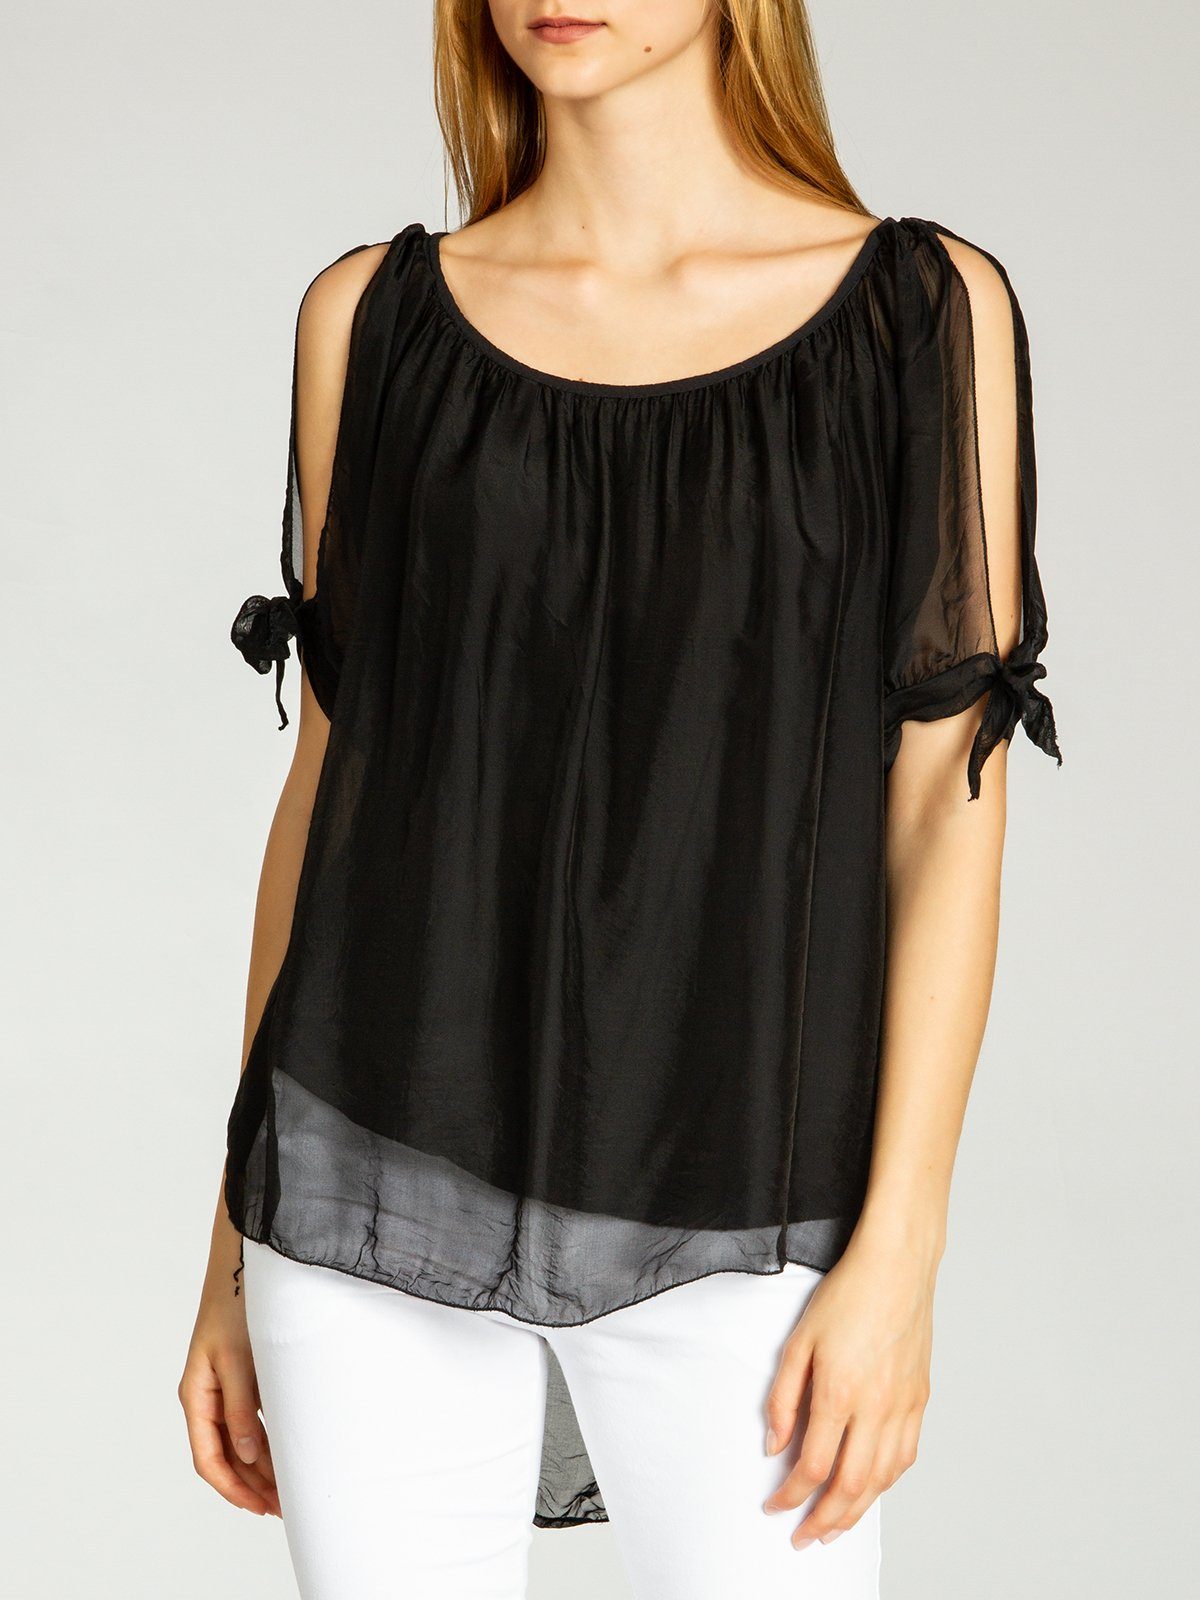 Seidenanteil lange leichte Damen Caspar elegante Shirtbluse Bluse Sommer mit BLU020 schwarz